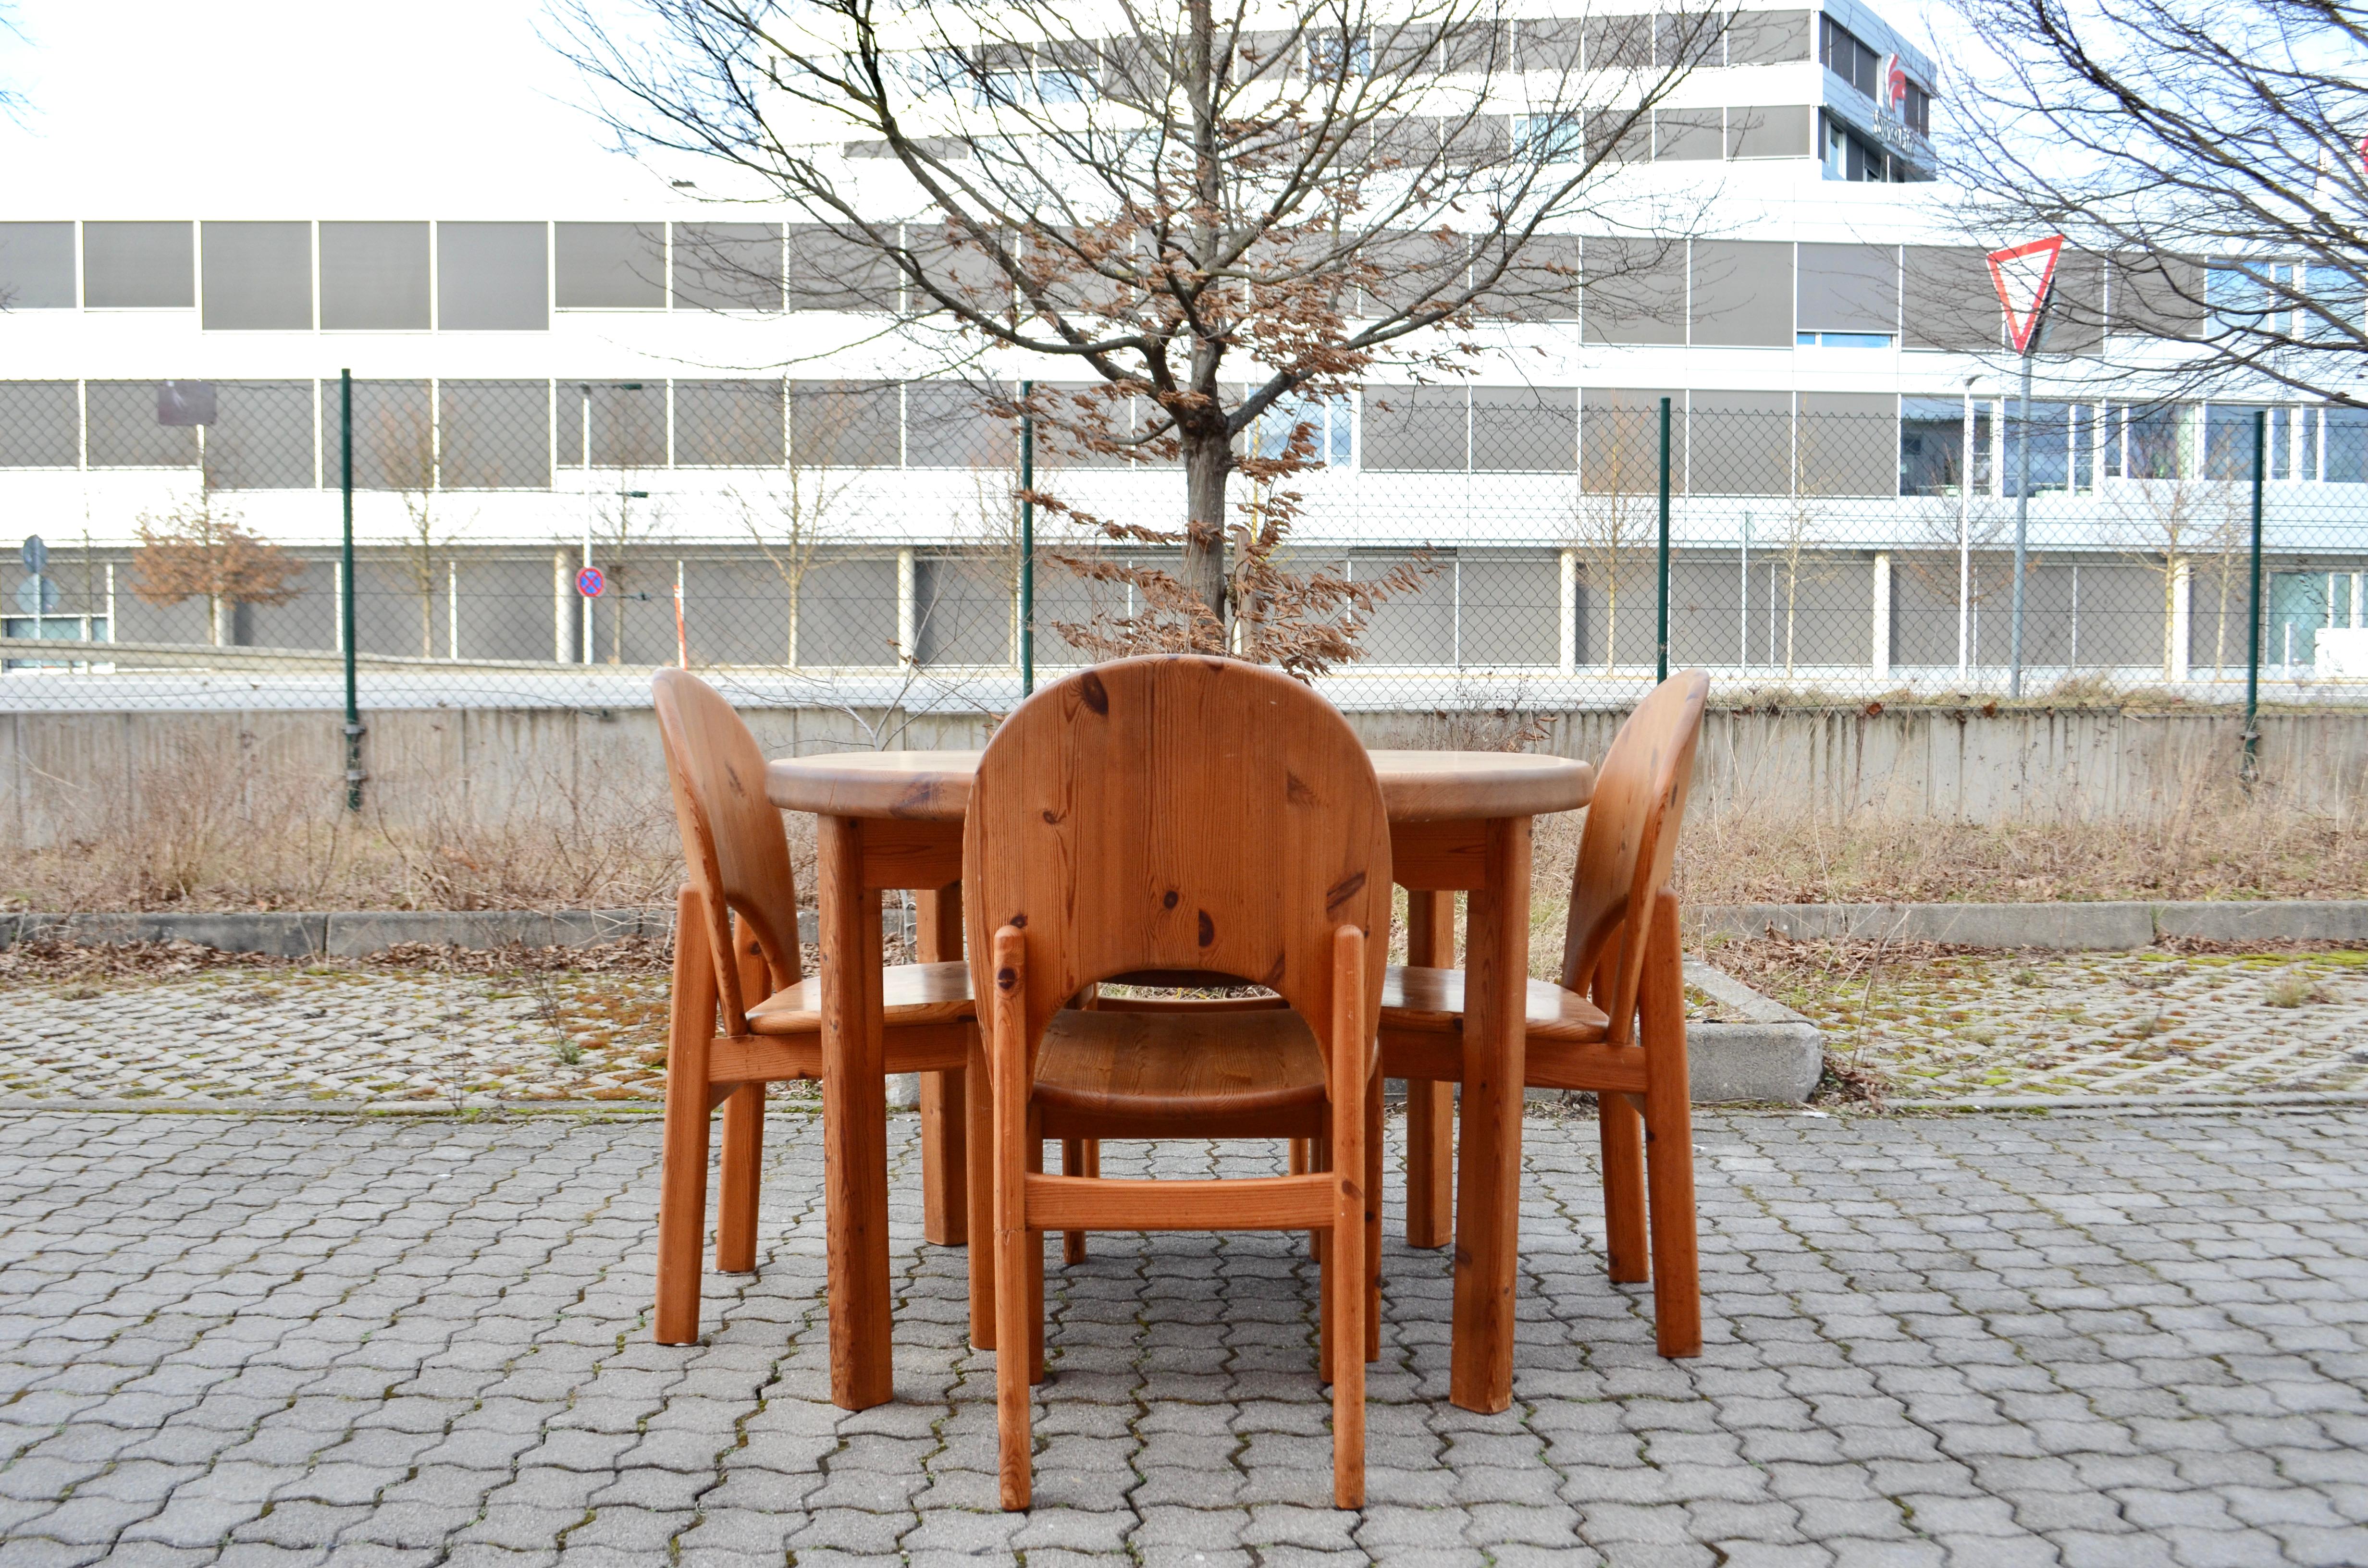 Dieses wunderschöne Esstischset wird von Glostrup Mobler aus Dänemark hergestellt.
Die Stühle sind schön geformt.
Die Rückenlehne des Stuhls und die Gelenke haben einige schöne Details.
Es besteht aus massivem, geöltem skandinavischem